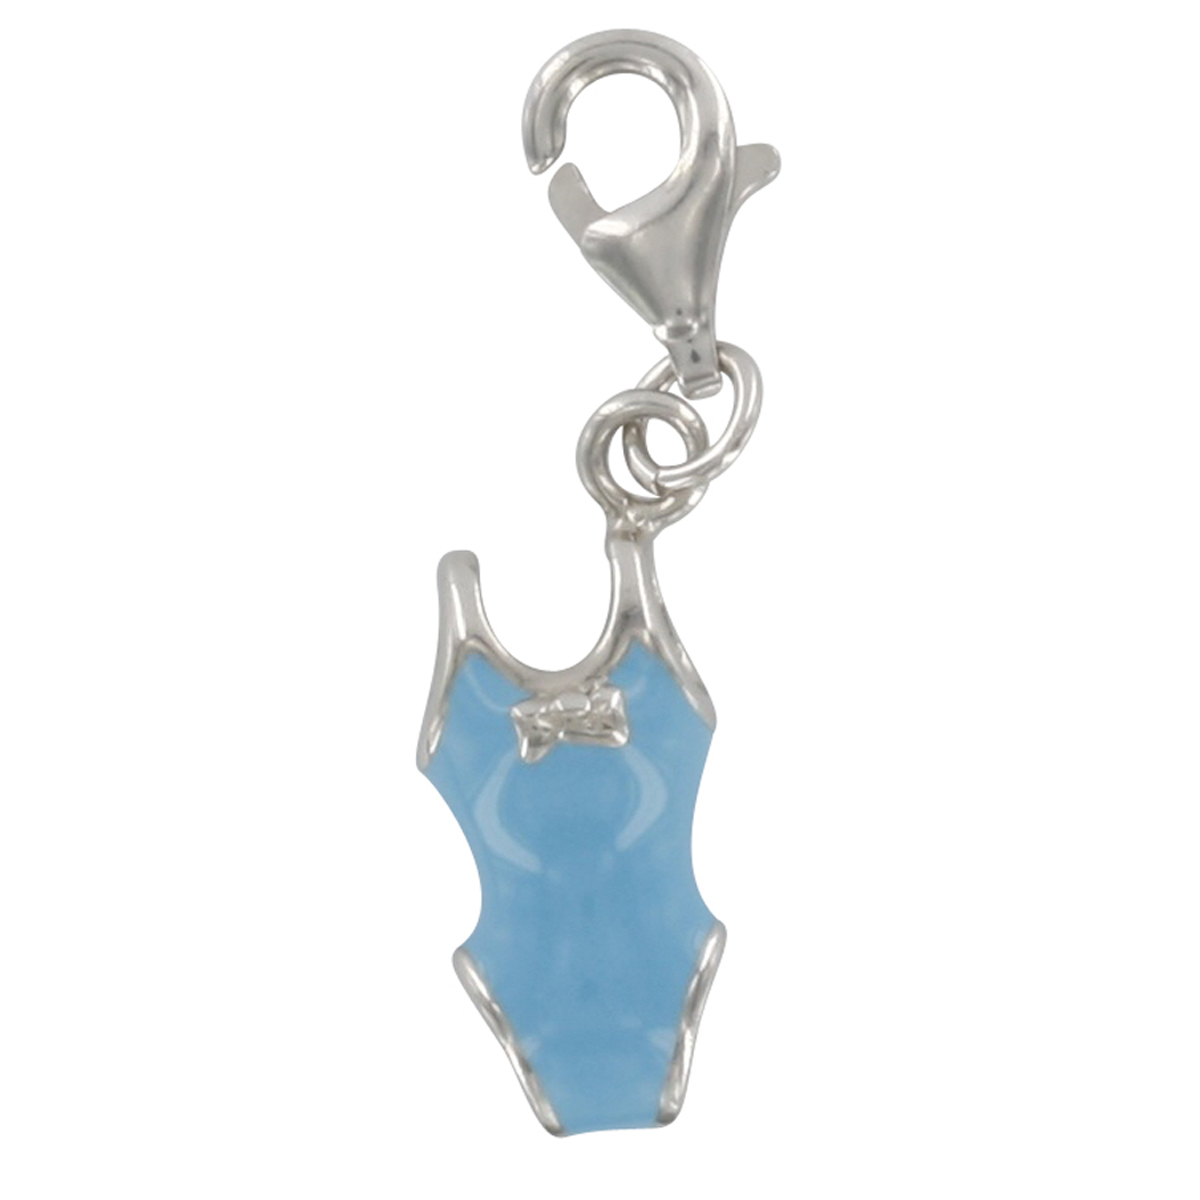 Pendentif charm argent \'Maillot de bain\' bleu argenté (rhodié) - 15x7 mm - [Q4890]